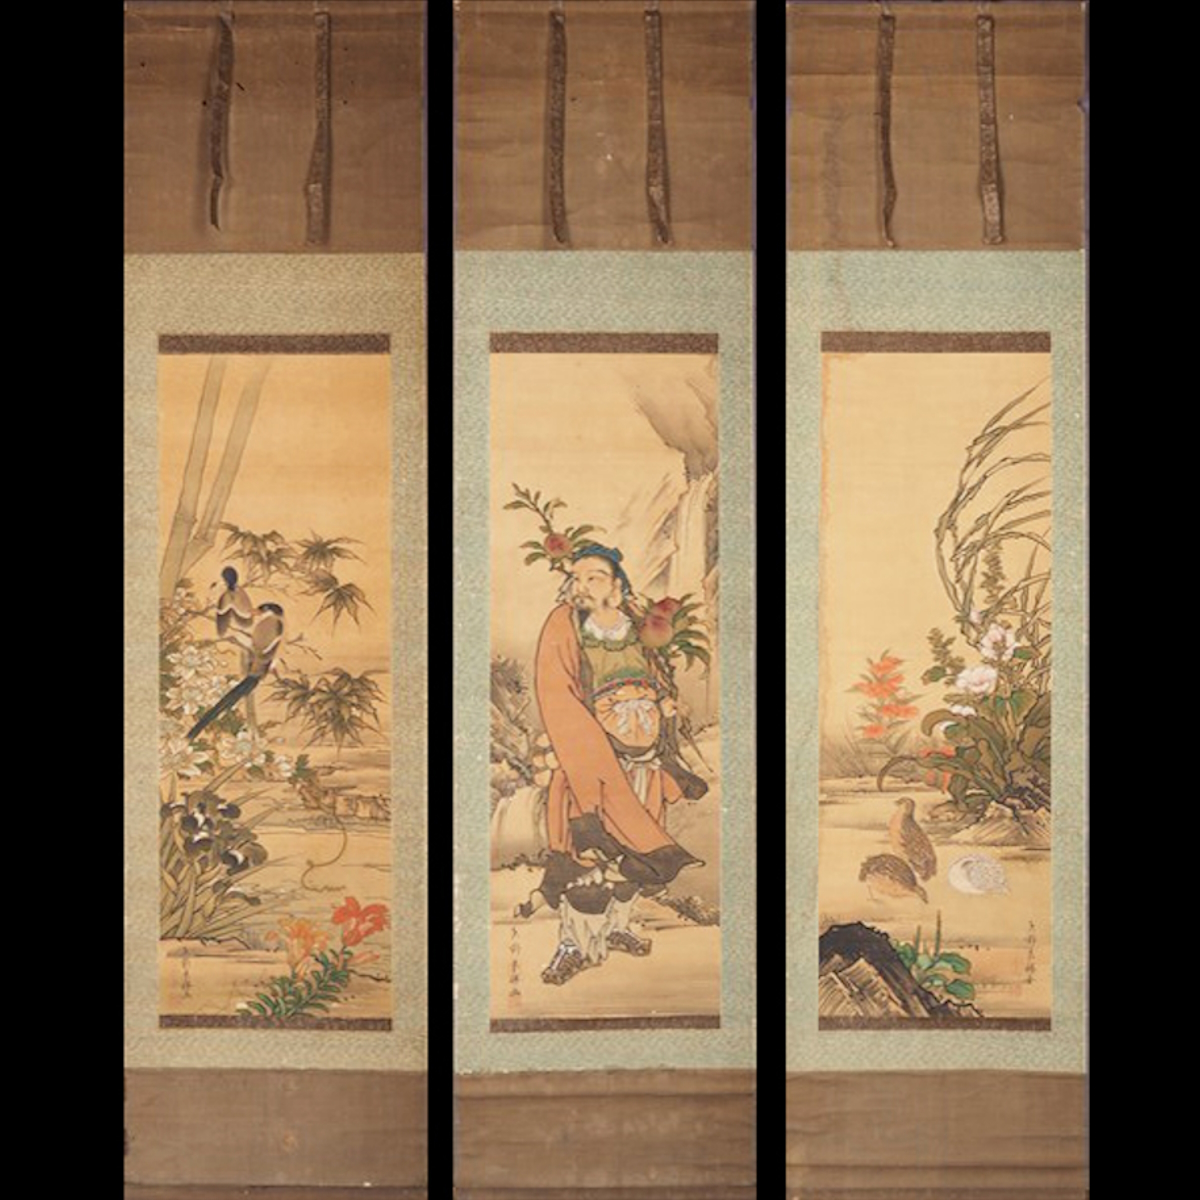 [Authentic] [Watarikan] [Yano Yoshikatsu] 11881 Hanging scroll Japanese painting Triptych Figure painting Flower and bird painting Box Silk 5 generations of the Yano family Kumamoto Higo Signature, Painting, Japanese painting, Flowers and Birds, Wildlife